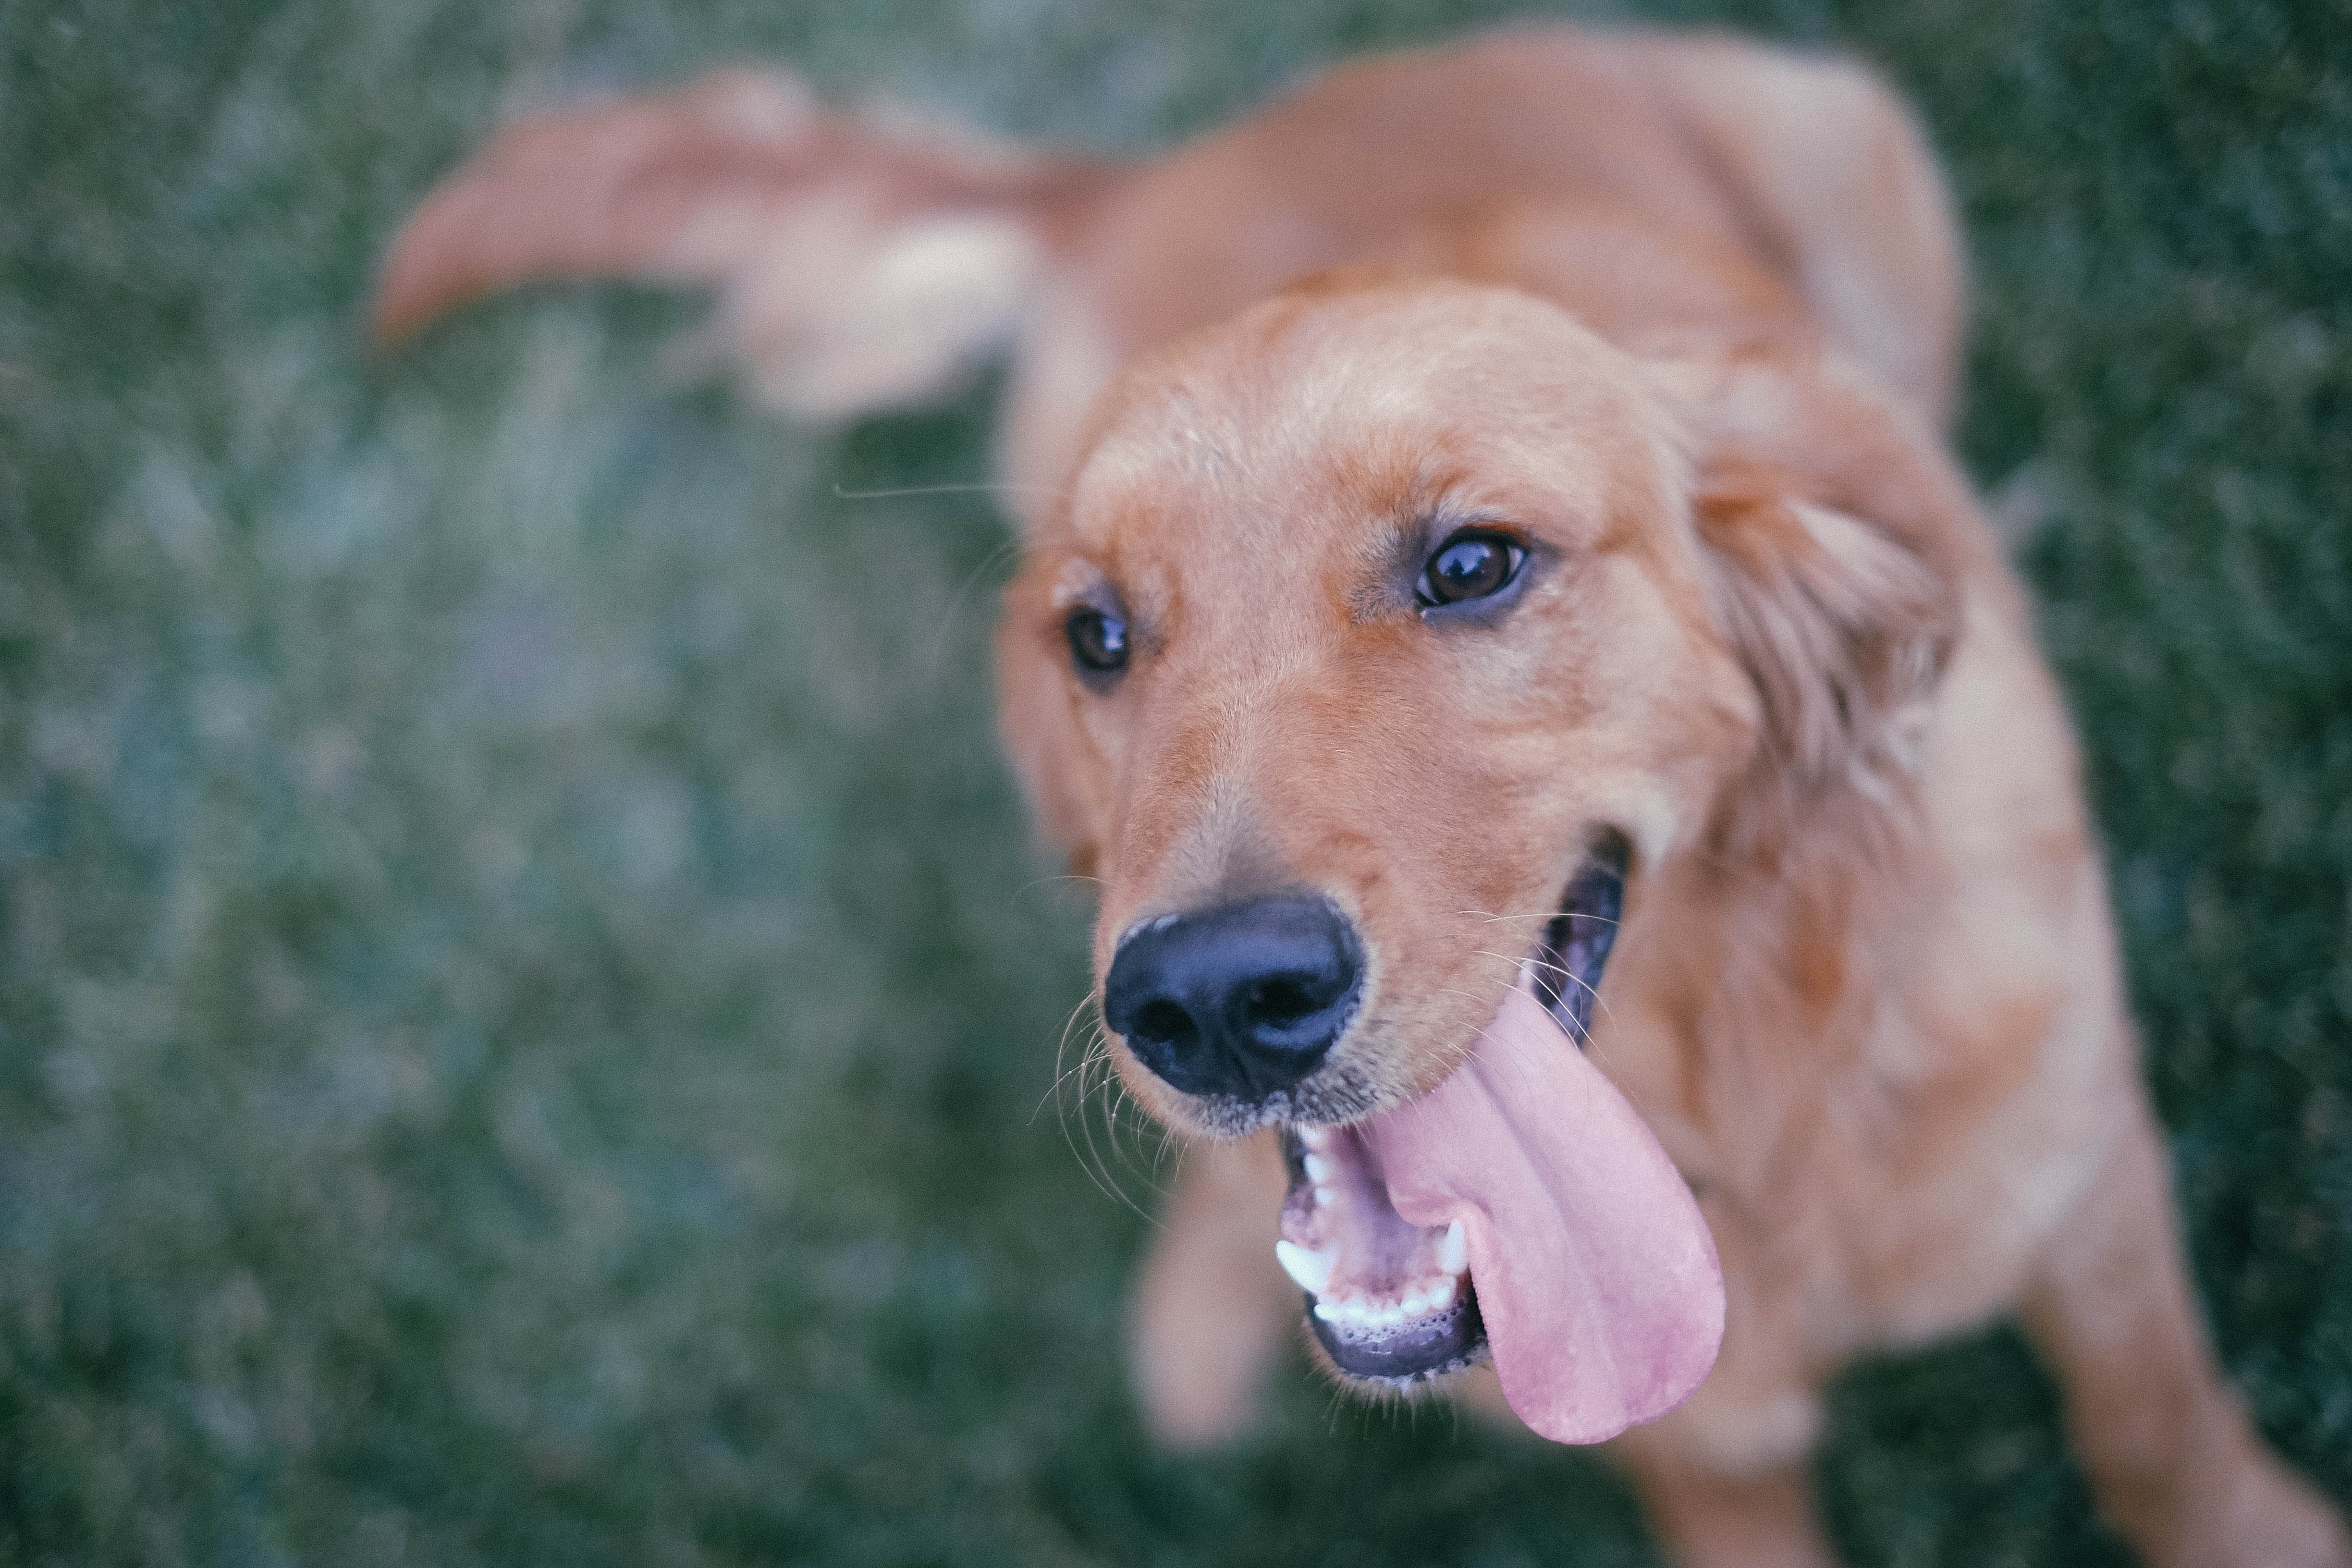 Фото межпородные скрещивания собак собака мех - бесплатные картинки на Fonwall